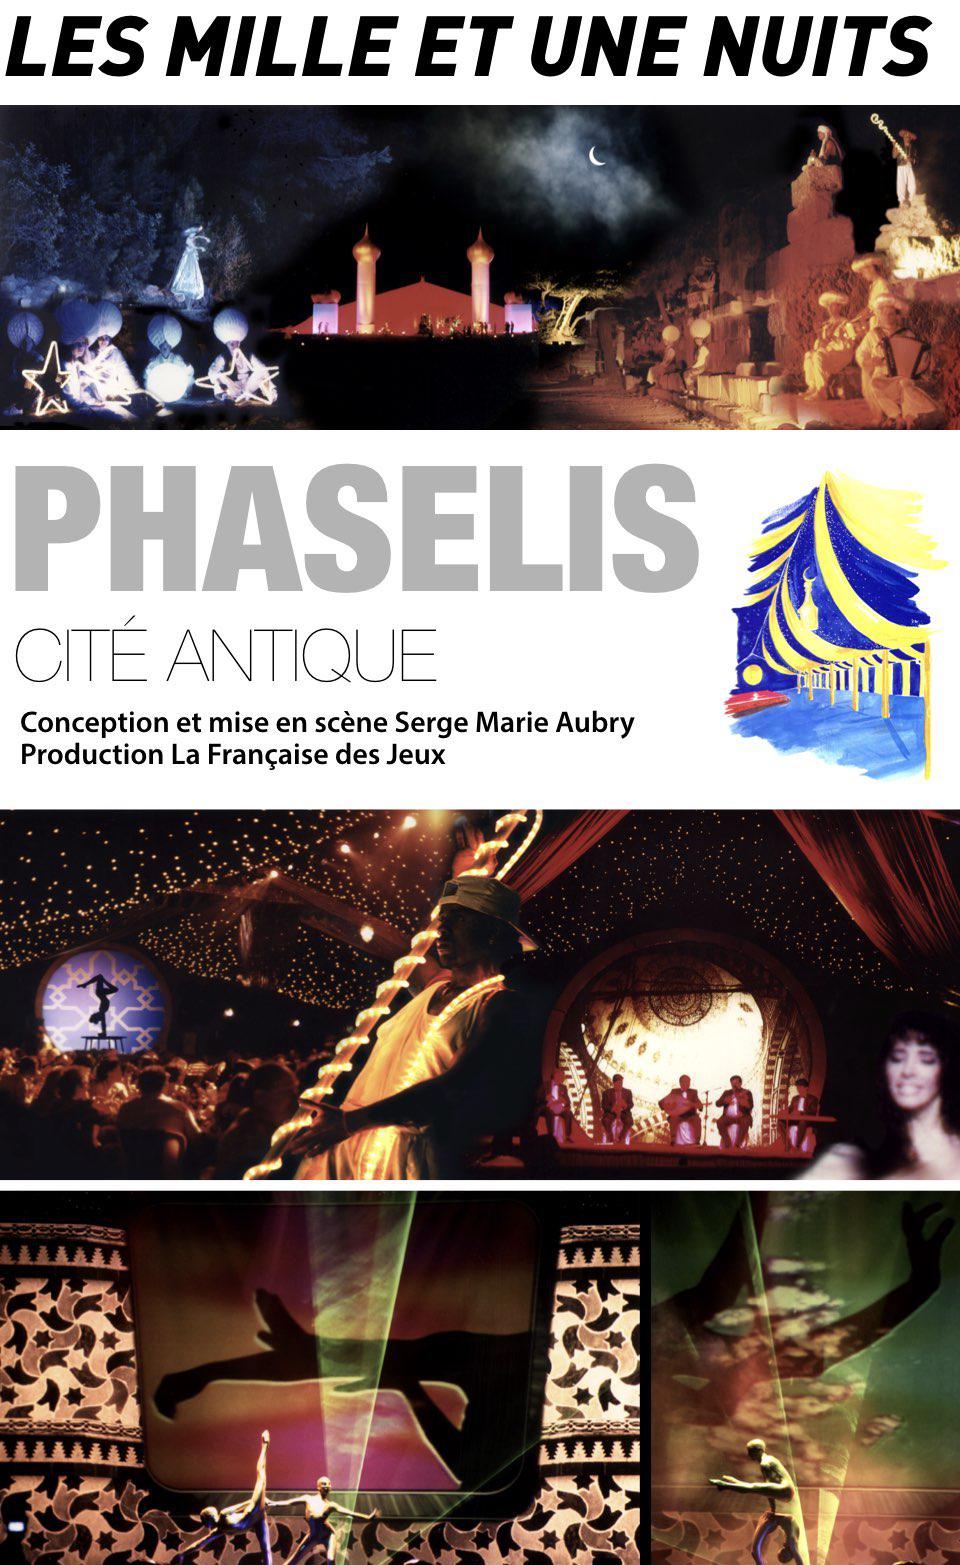 Les 1001 NUITS de PHASELIS / Serge Marie Aubry 01